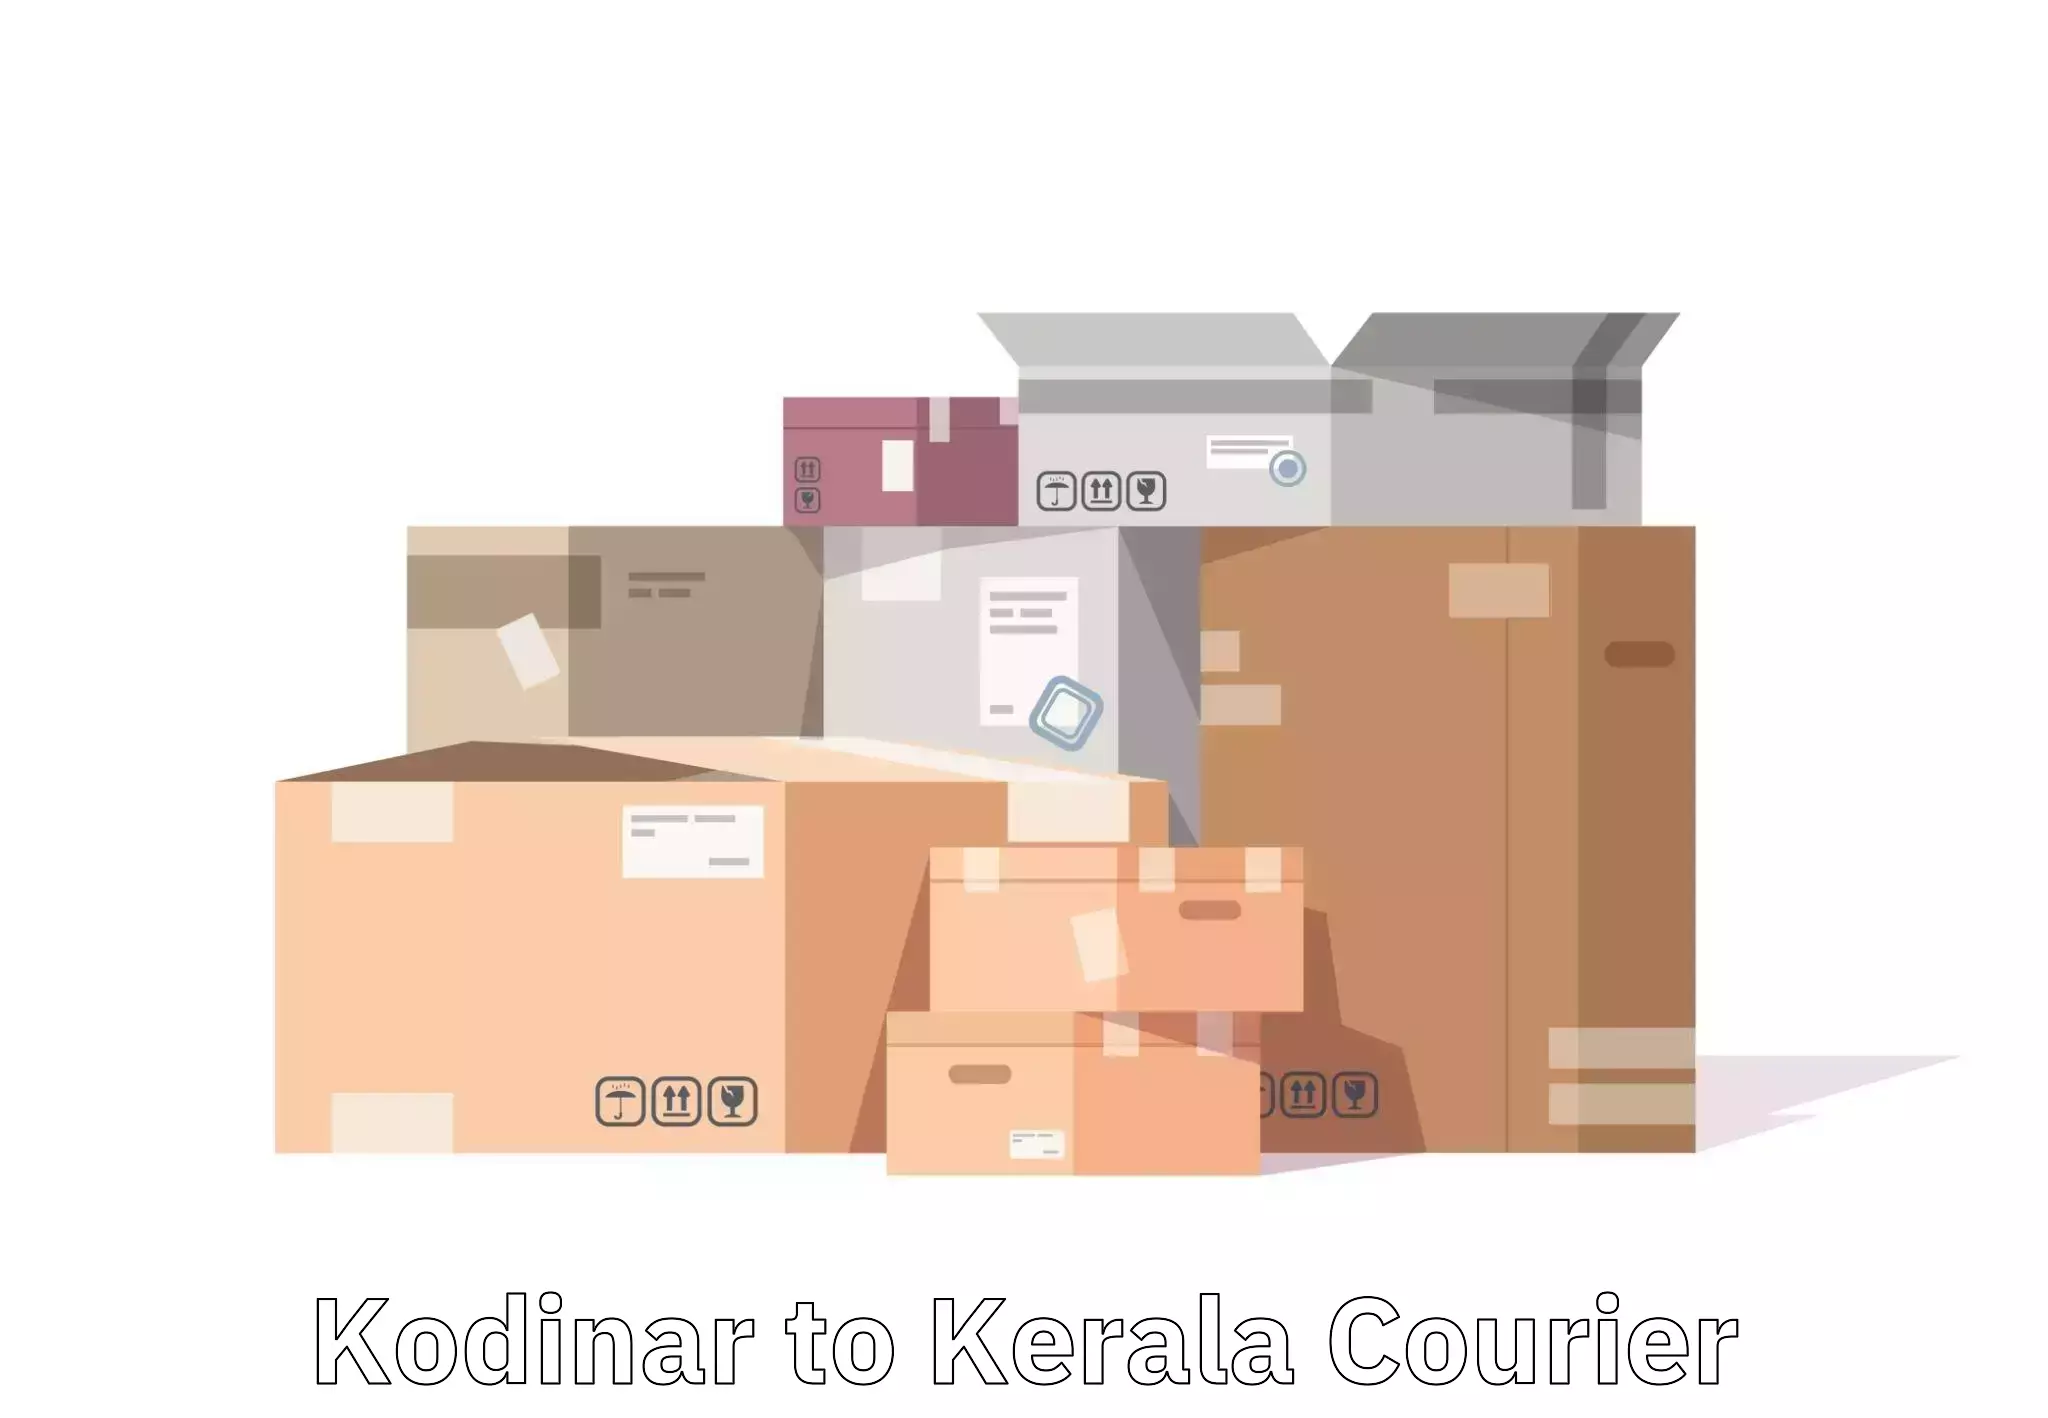 Luggage transport operations Kodinar to Mundakayam